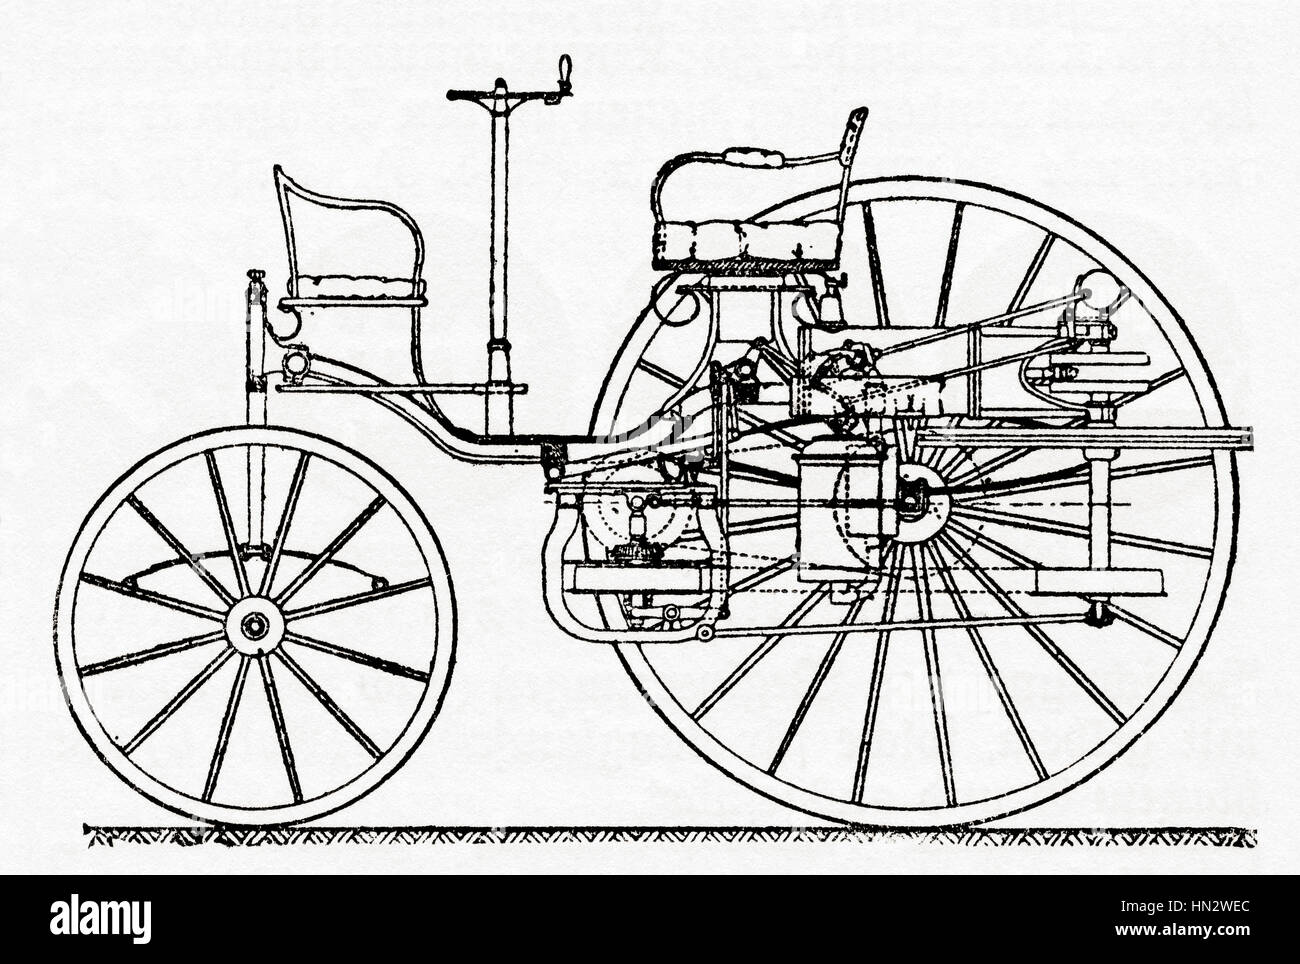 Eine frühe Benz Patent-Motorwagen, das erste Automobil (1885 – 1886).   Aus Meyers Lexikon veröffentlicht 1927. Stockfoto